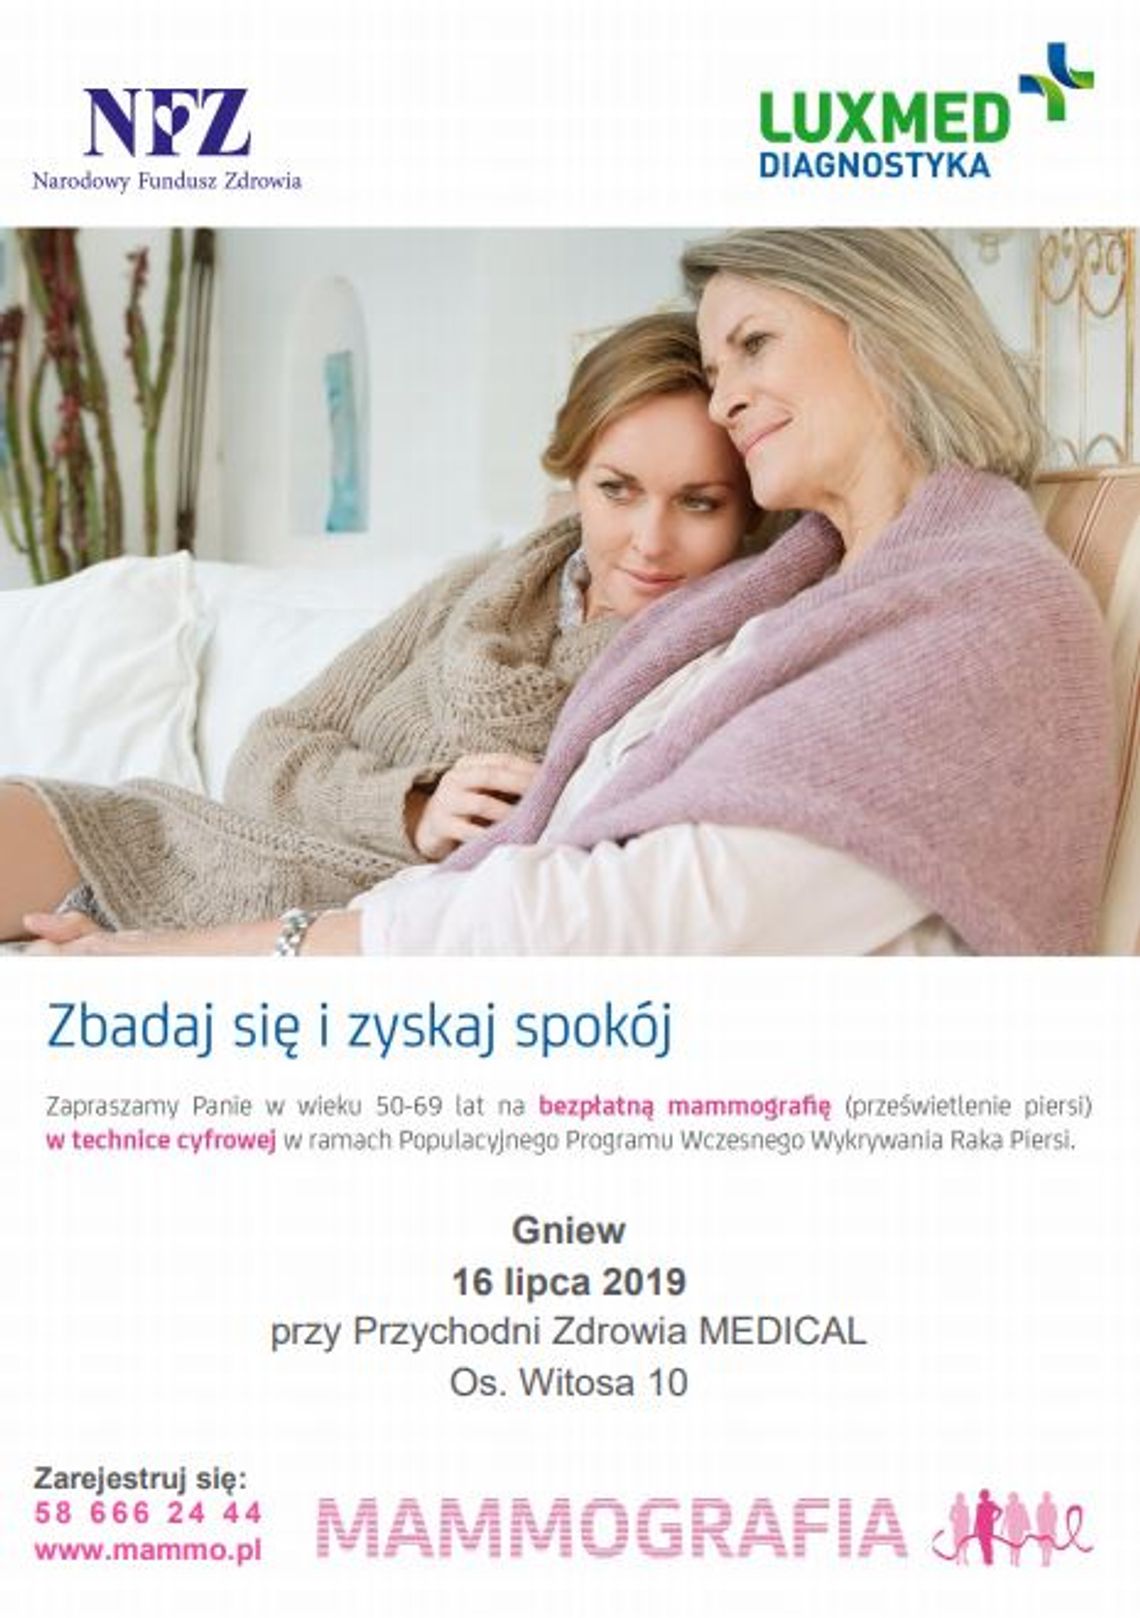 Bezpłatna mammografia - GNIEW